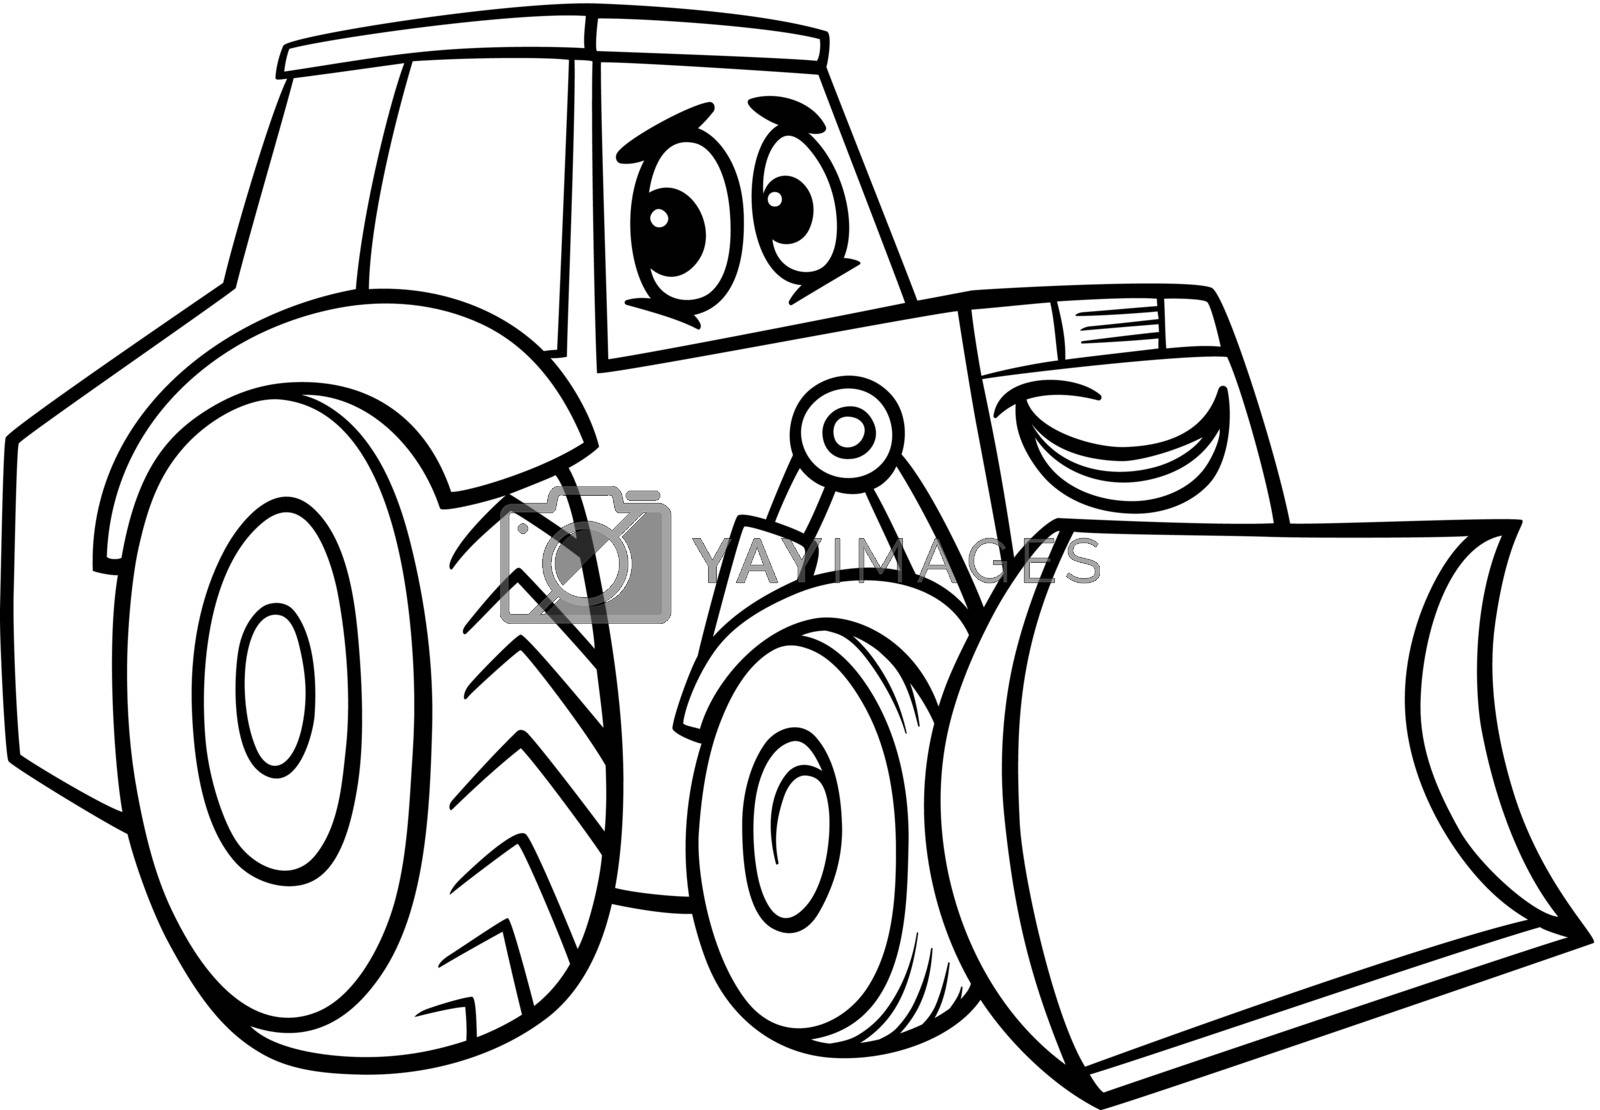 Royalty Free Vector | bulldozer cartoon for coloring book by izakowski